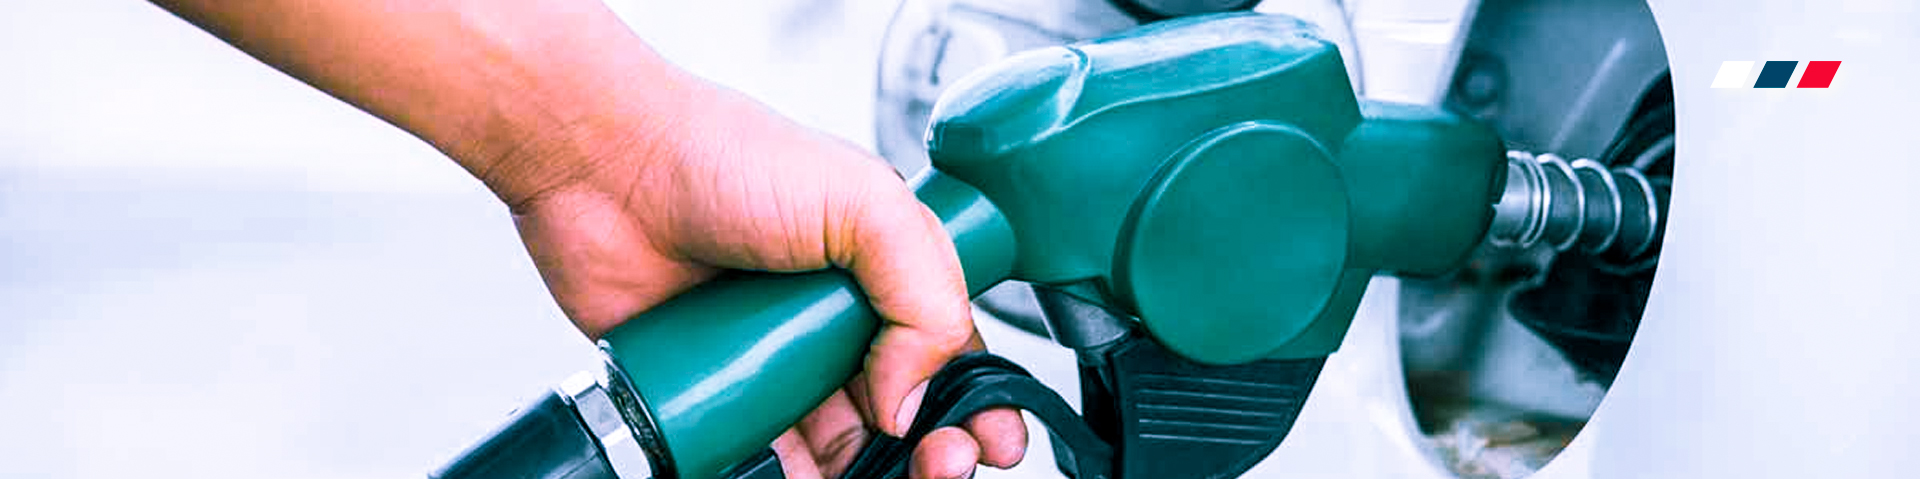 Los 5 autos que más ahorran gasolina